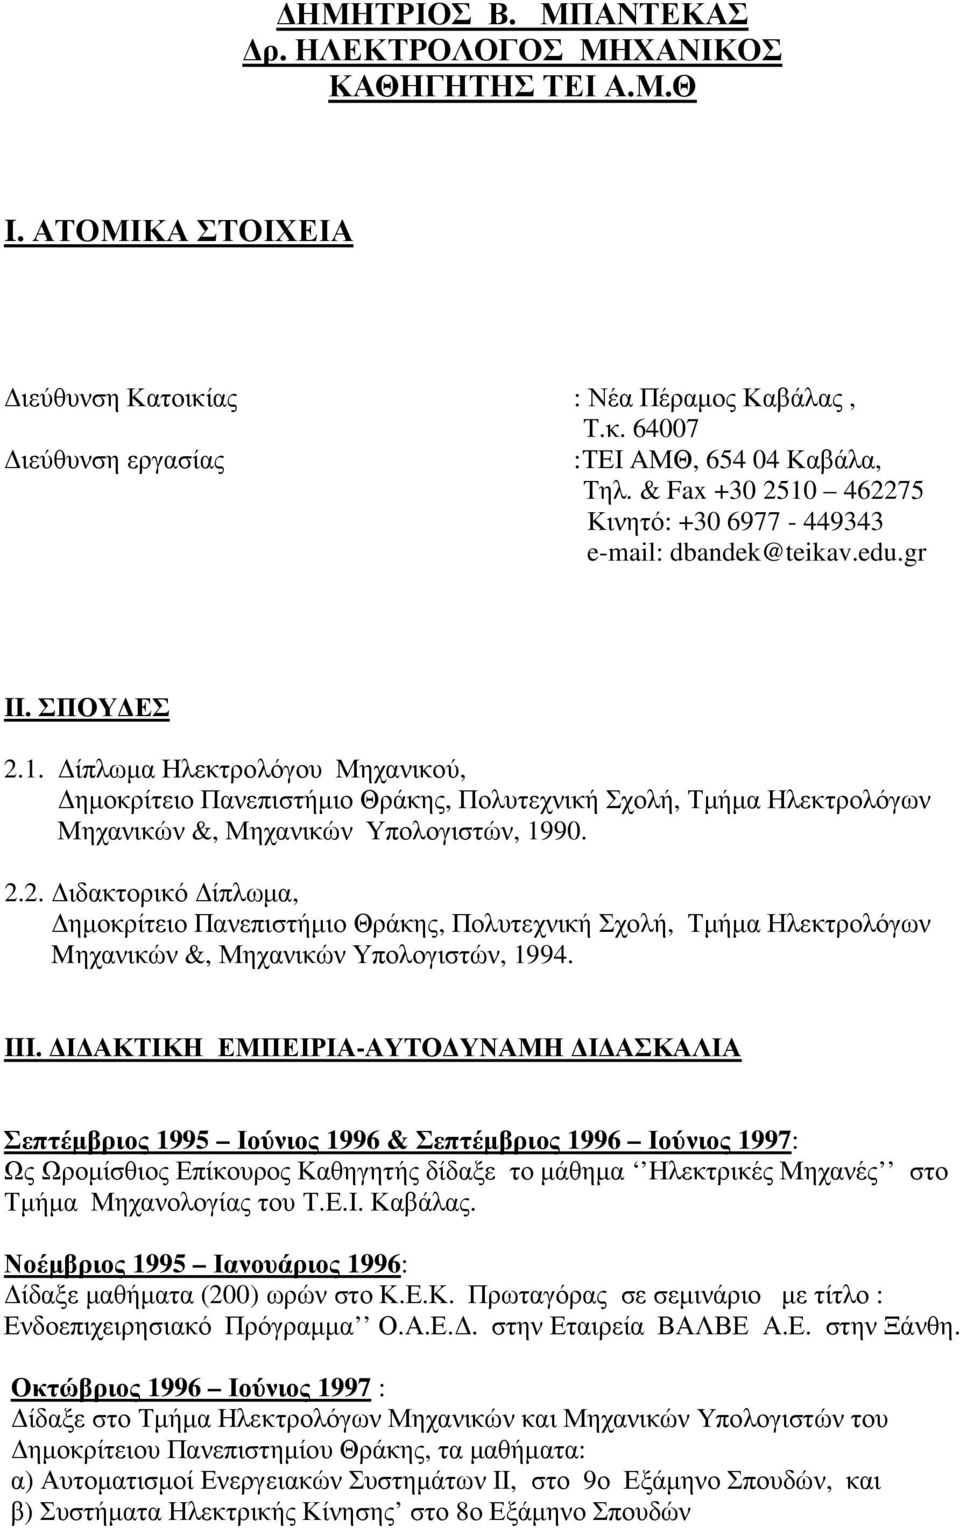 2.2. ιδακτορικό ίπλωµα, ηµοκρίτειο Πανεπιστήµιο Θράκης, Πολυτεχνική Σχολή, Τµήµα Ηλεκτρολόγων Mηχανικών &, Μηχανικών Υπολογιστών, 1994. III.